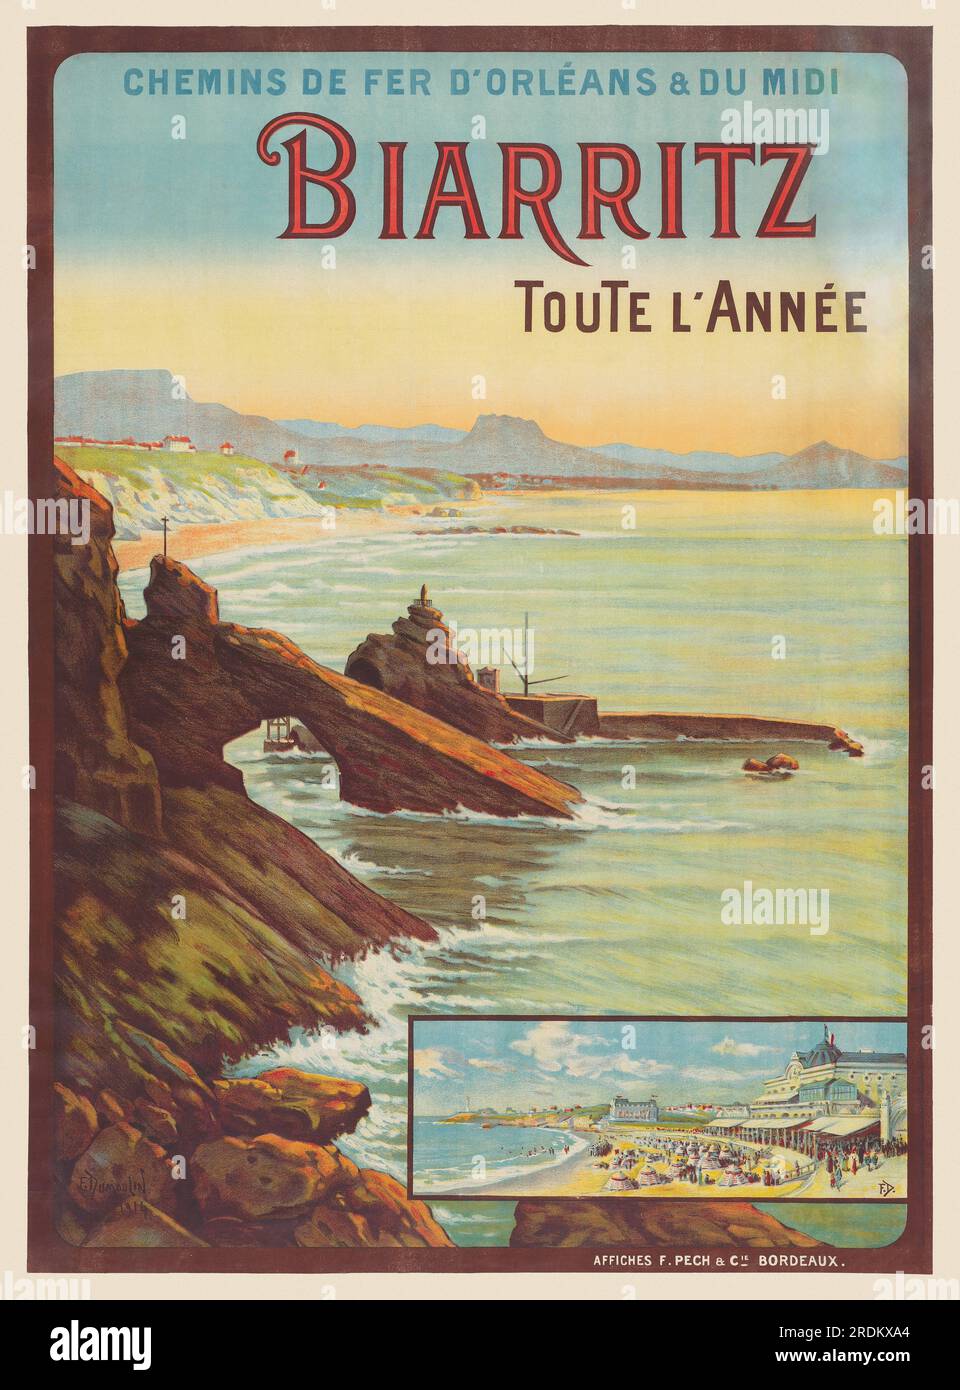 Chemins de fer d'Orleans et du Midi. Biarritz toute l'année von F. Dumoulin (Datum unbekannt). Poster wurde 1914 in Frankreich veröffentlicht. Stockfoto